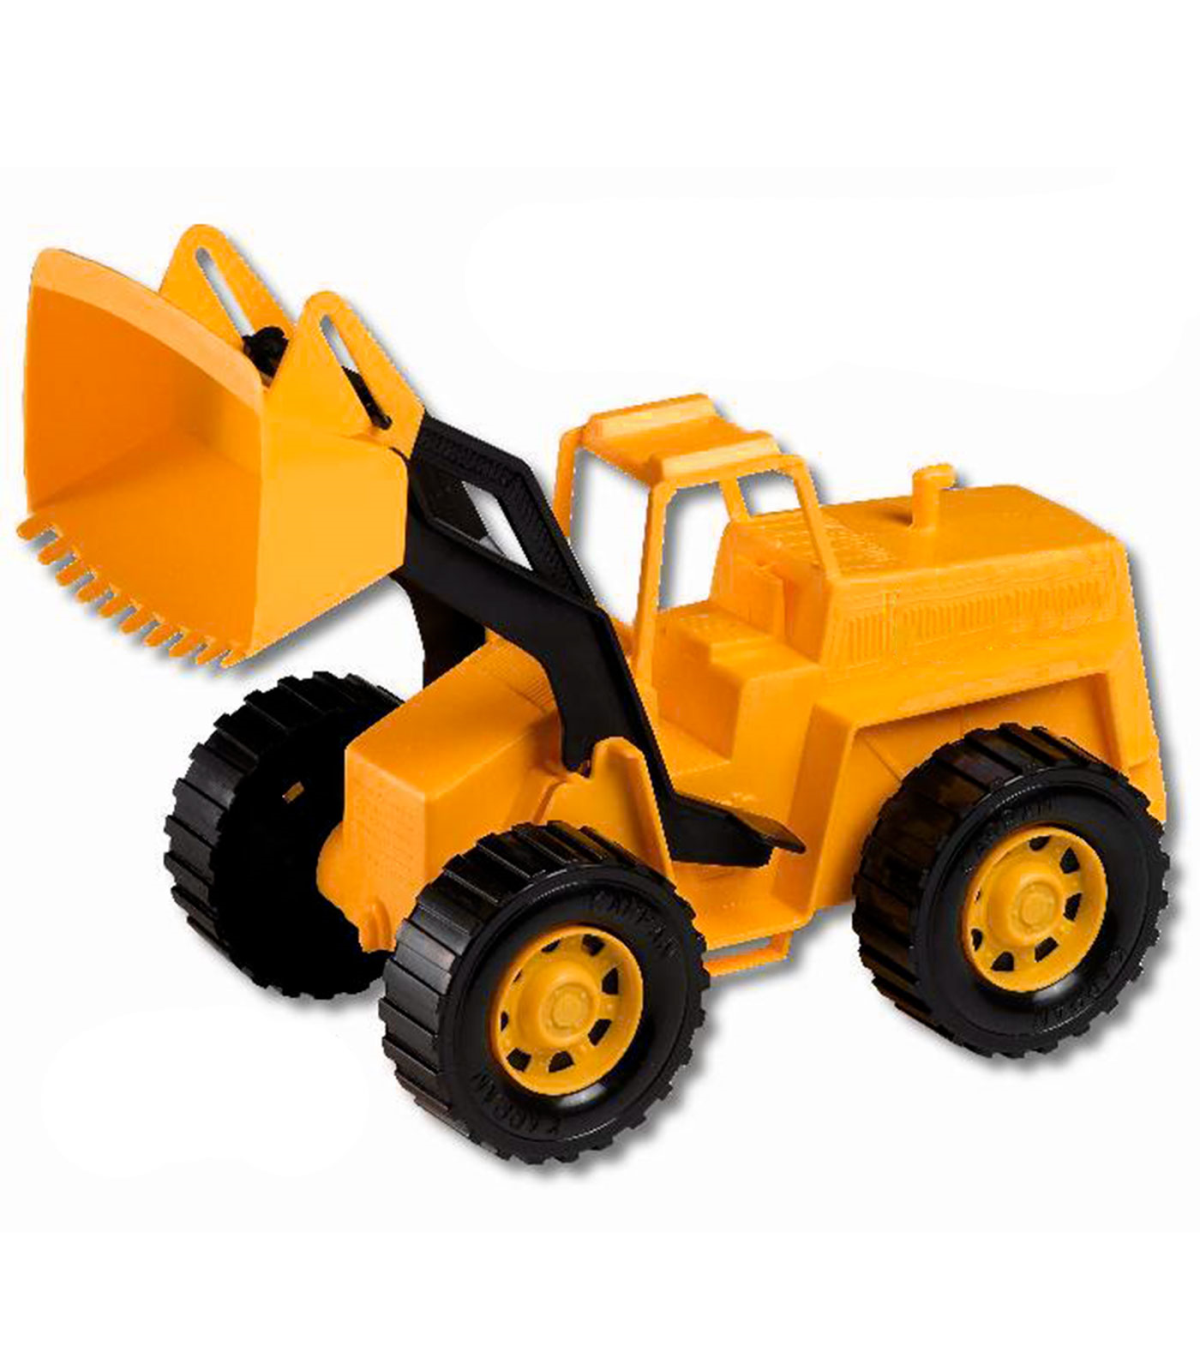 caliente Marco de referencia mini Tradineur - Excavadora de juguete de plástico, vehículo de obra, camión,  construcción, interacción, niños (Naranja y negro - 45,